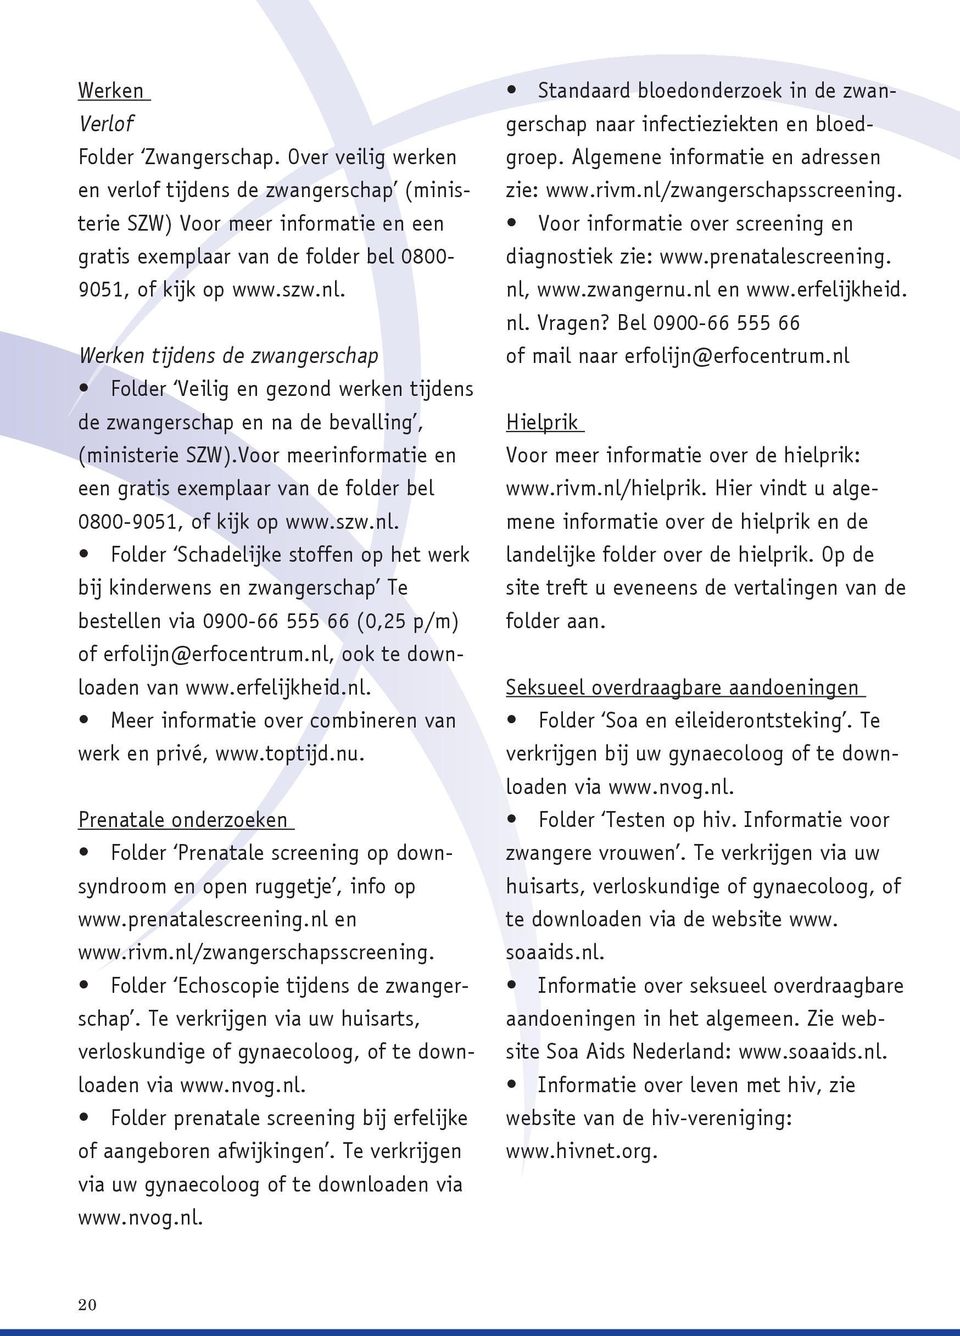 Voor meerinformatie en een gratis exemplaar van de folder bel 0800-9051, of kijk op www.szw.nl.